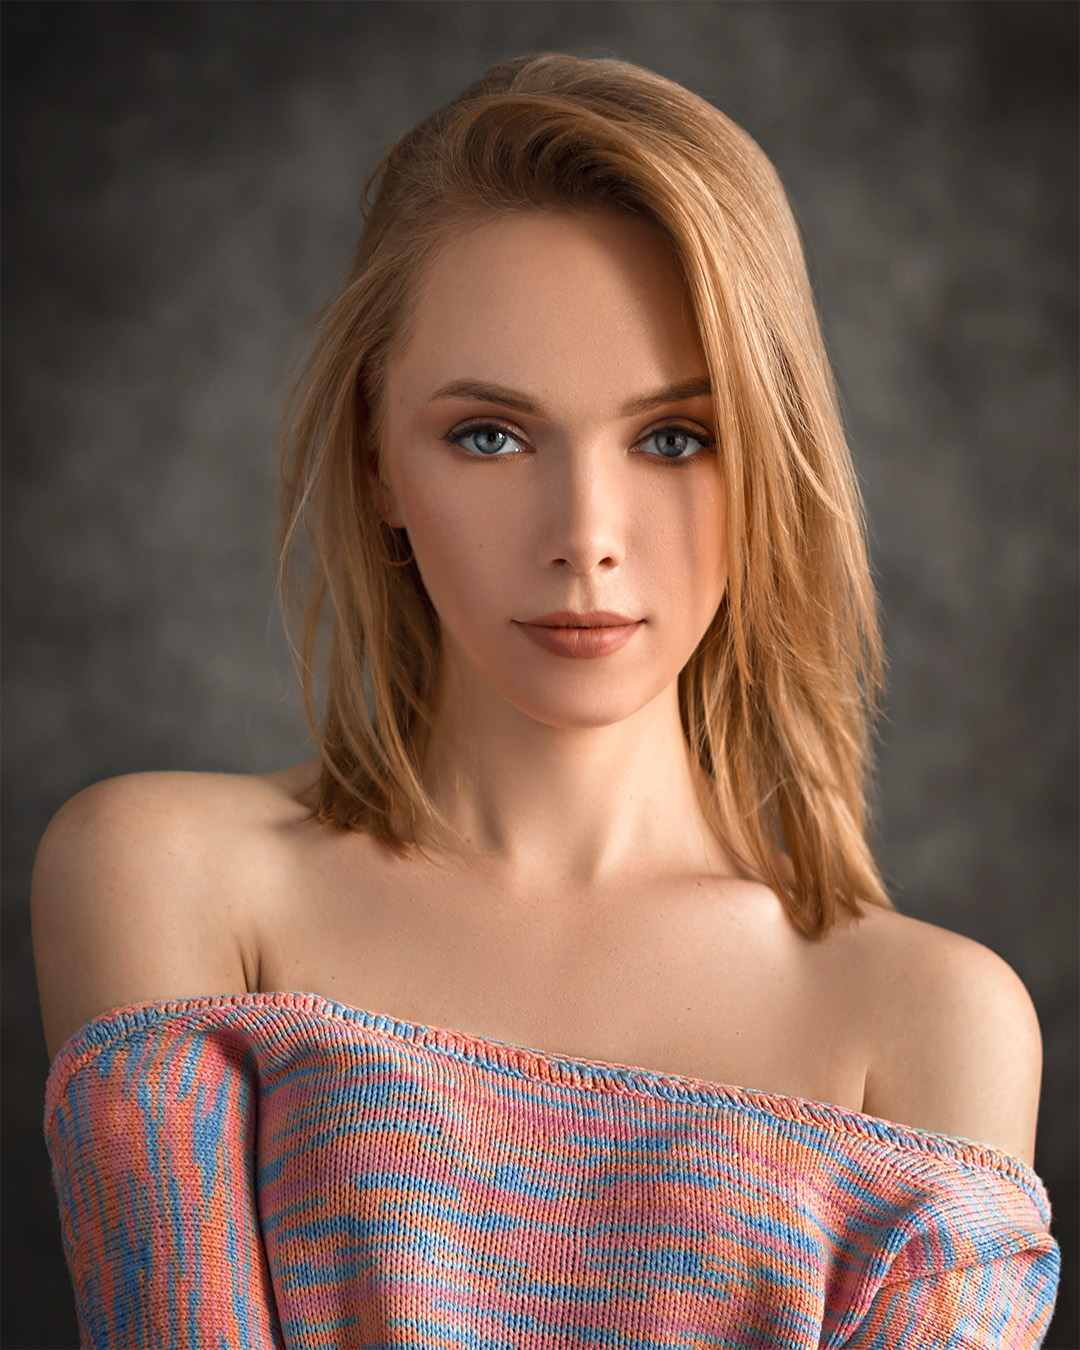 Evgeny Sibiraev Women Model Gray Eyes 1080x1350